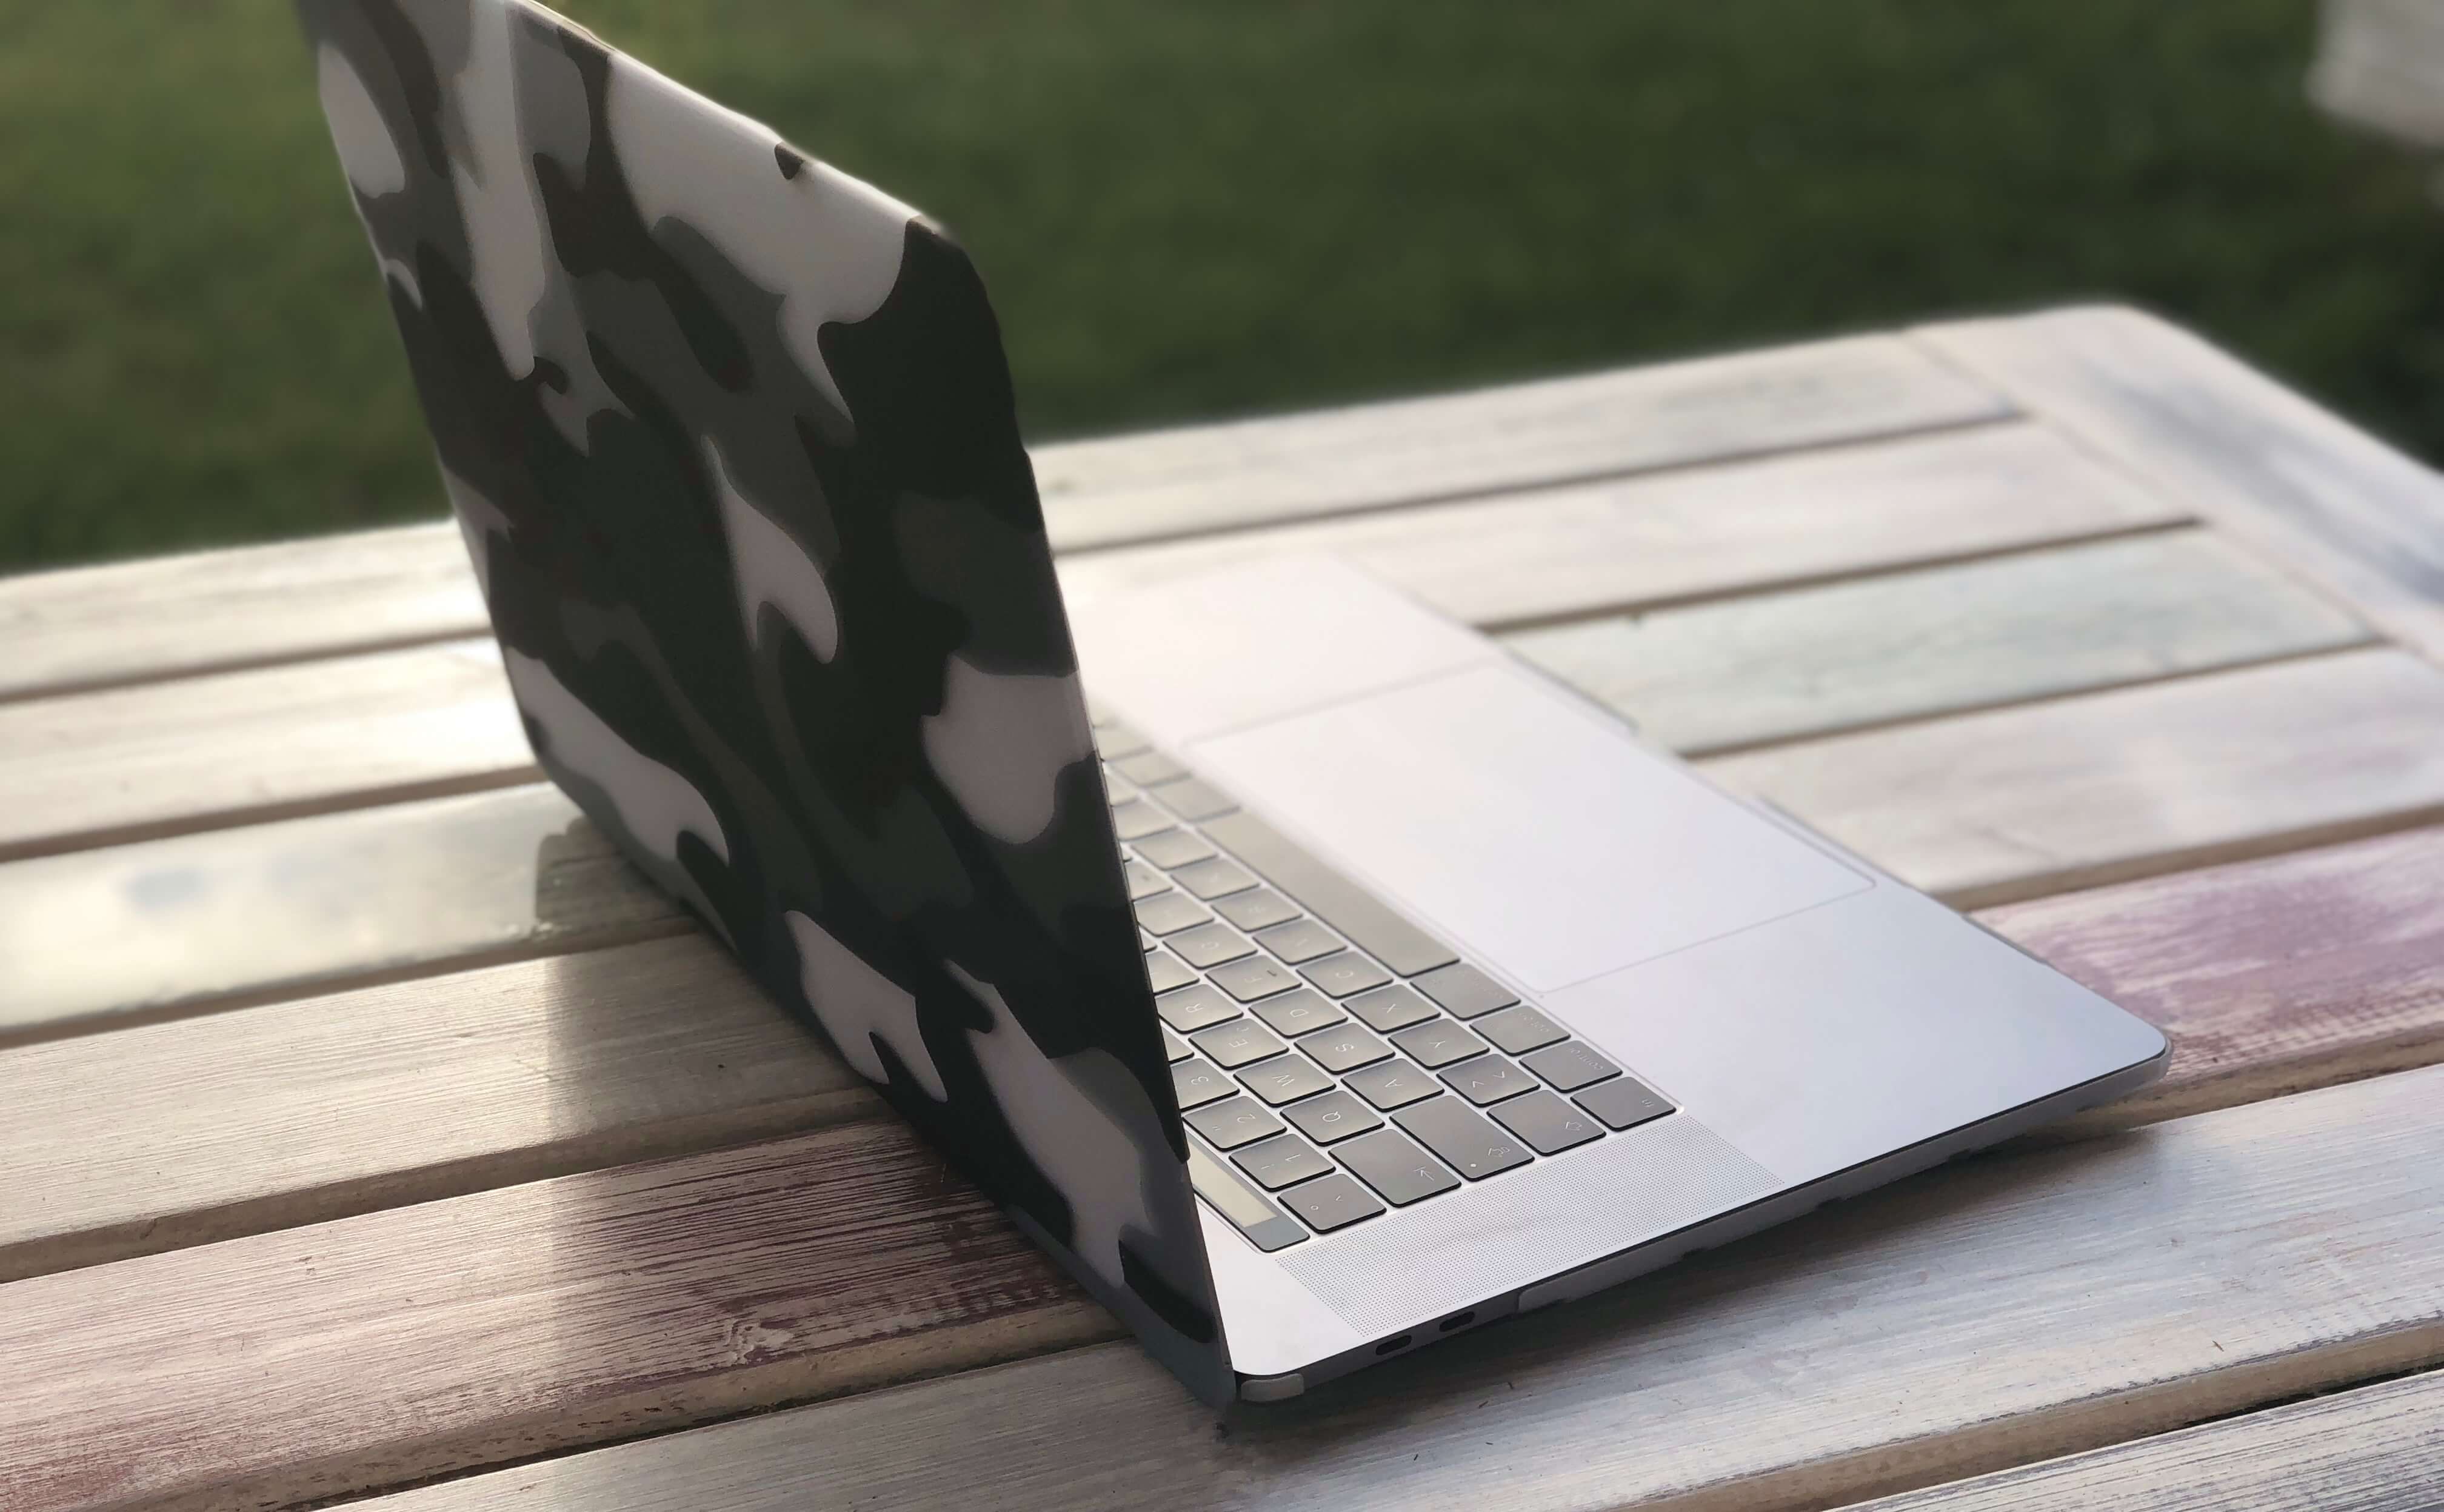 Tschüss MacBook Pro 15 Zoll! 5